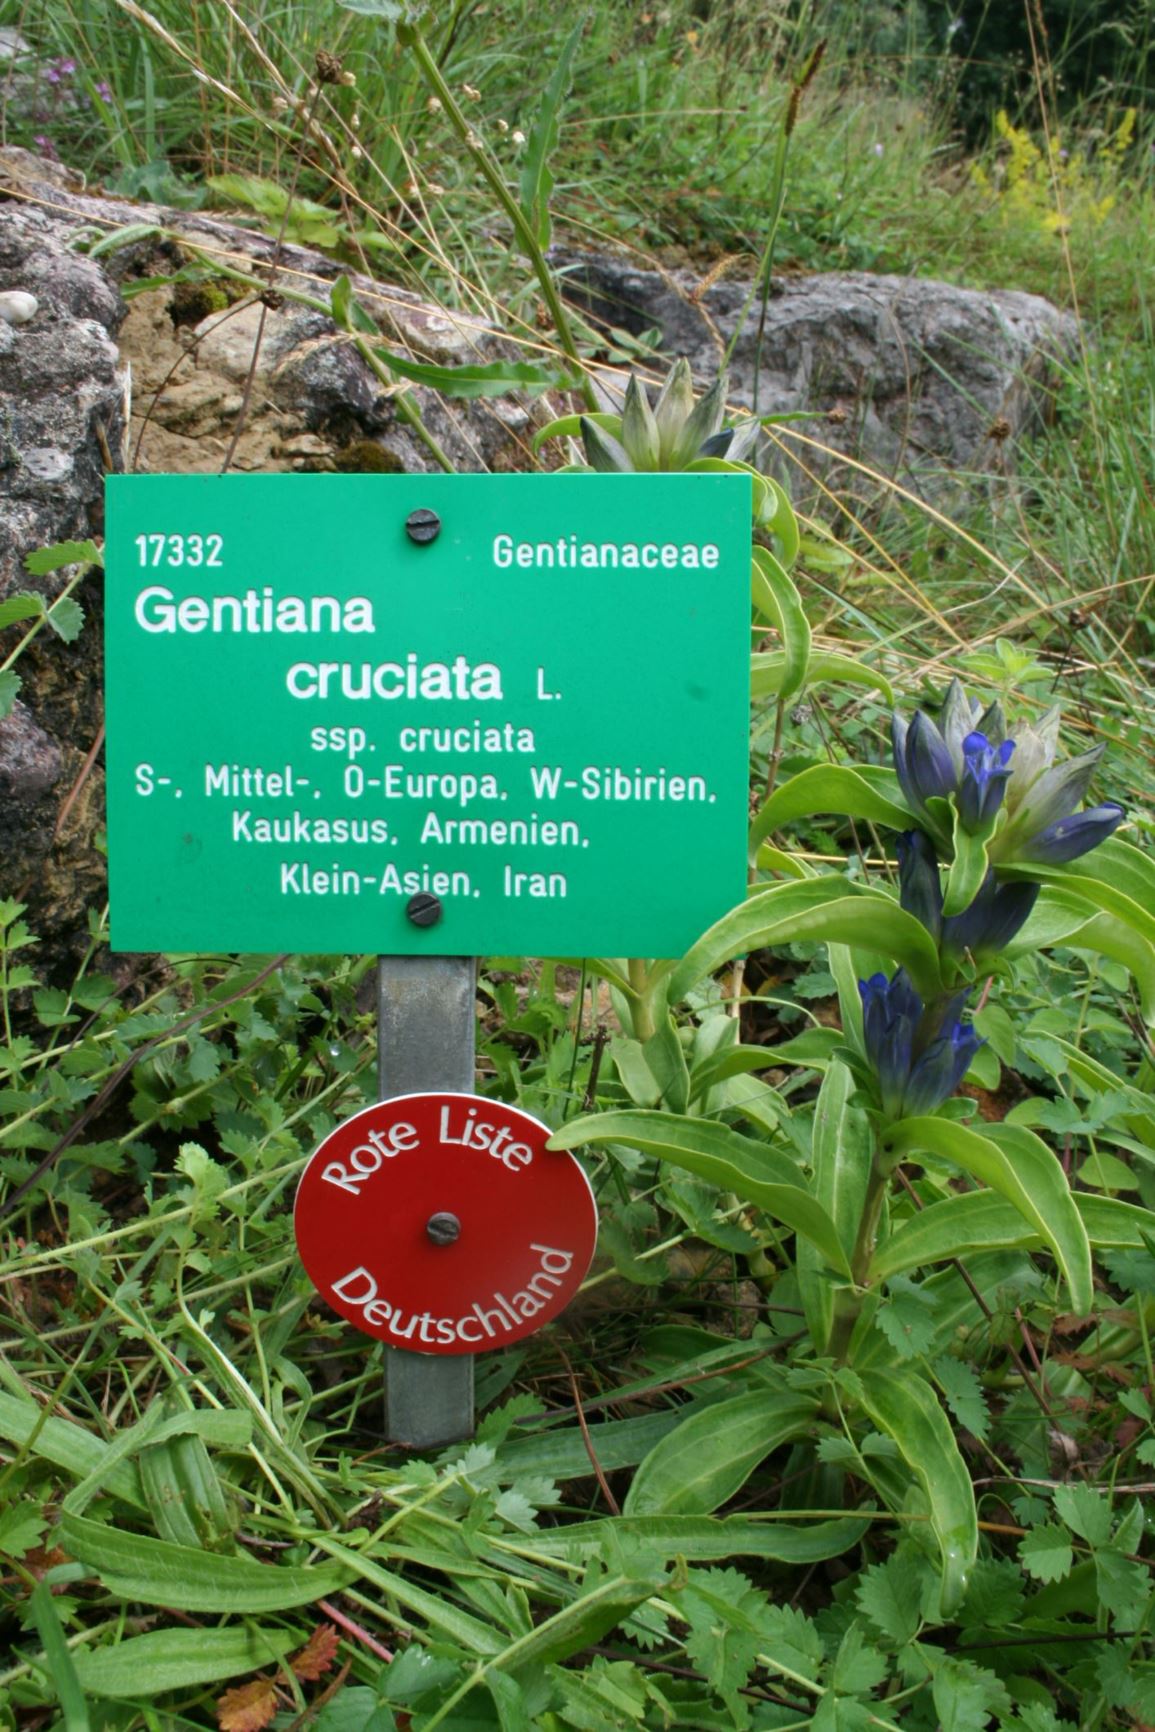 Gentiana cruciata subsp. cruciata - Kreuz-Enzian